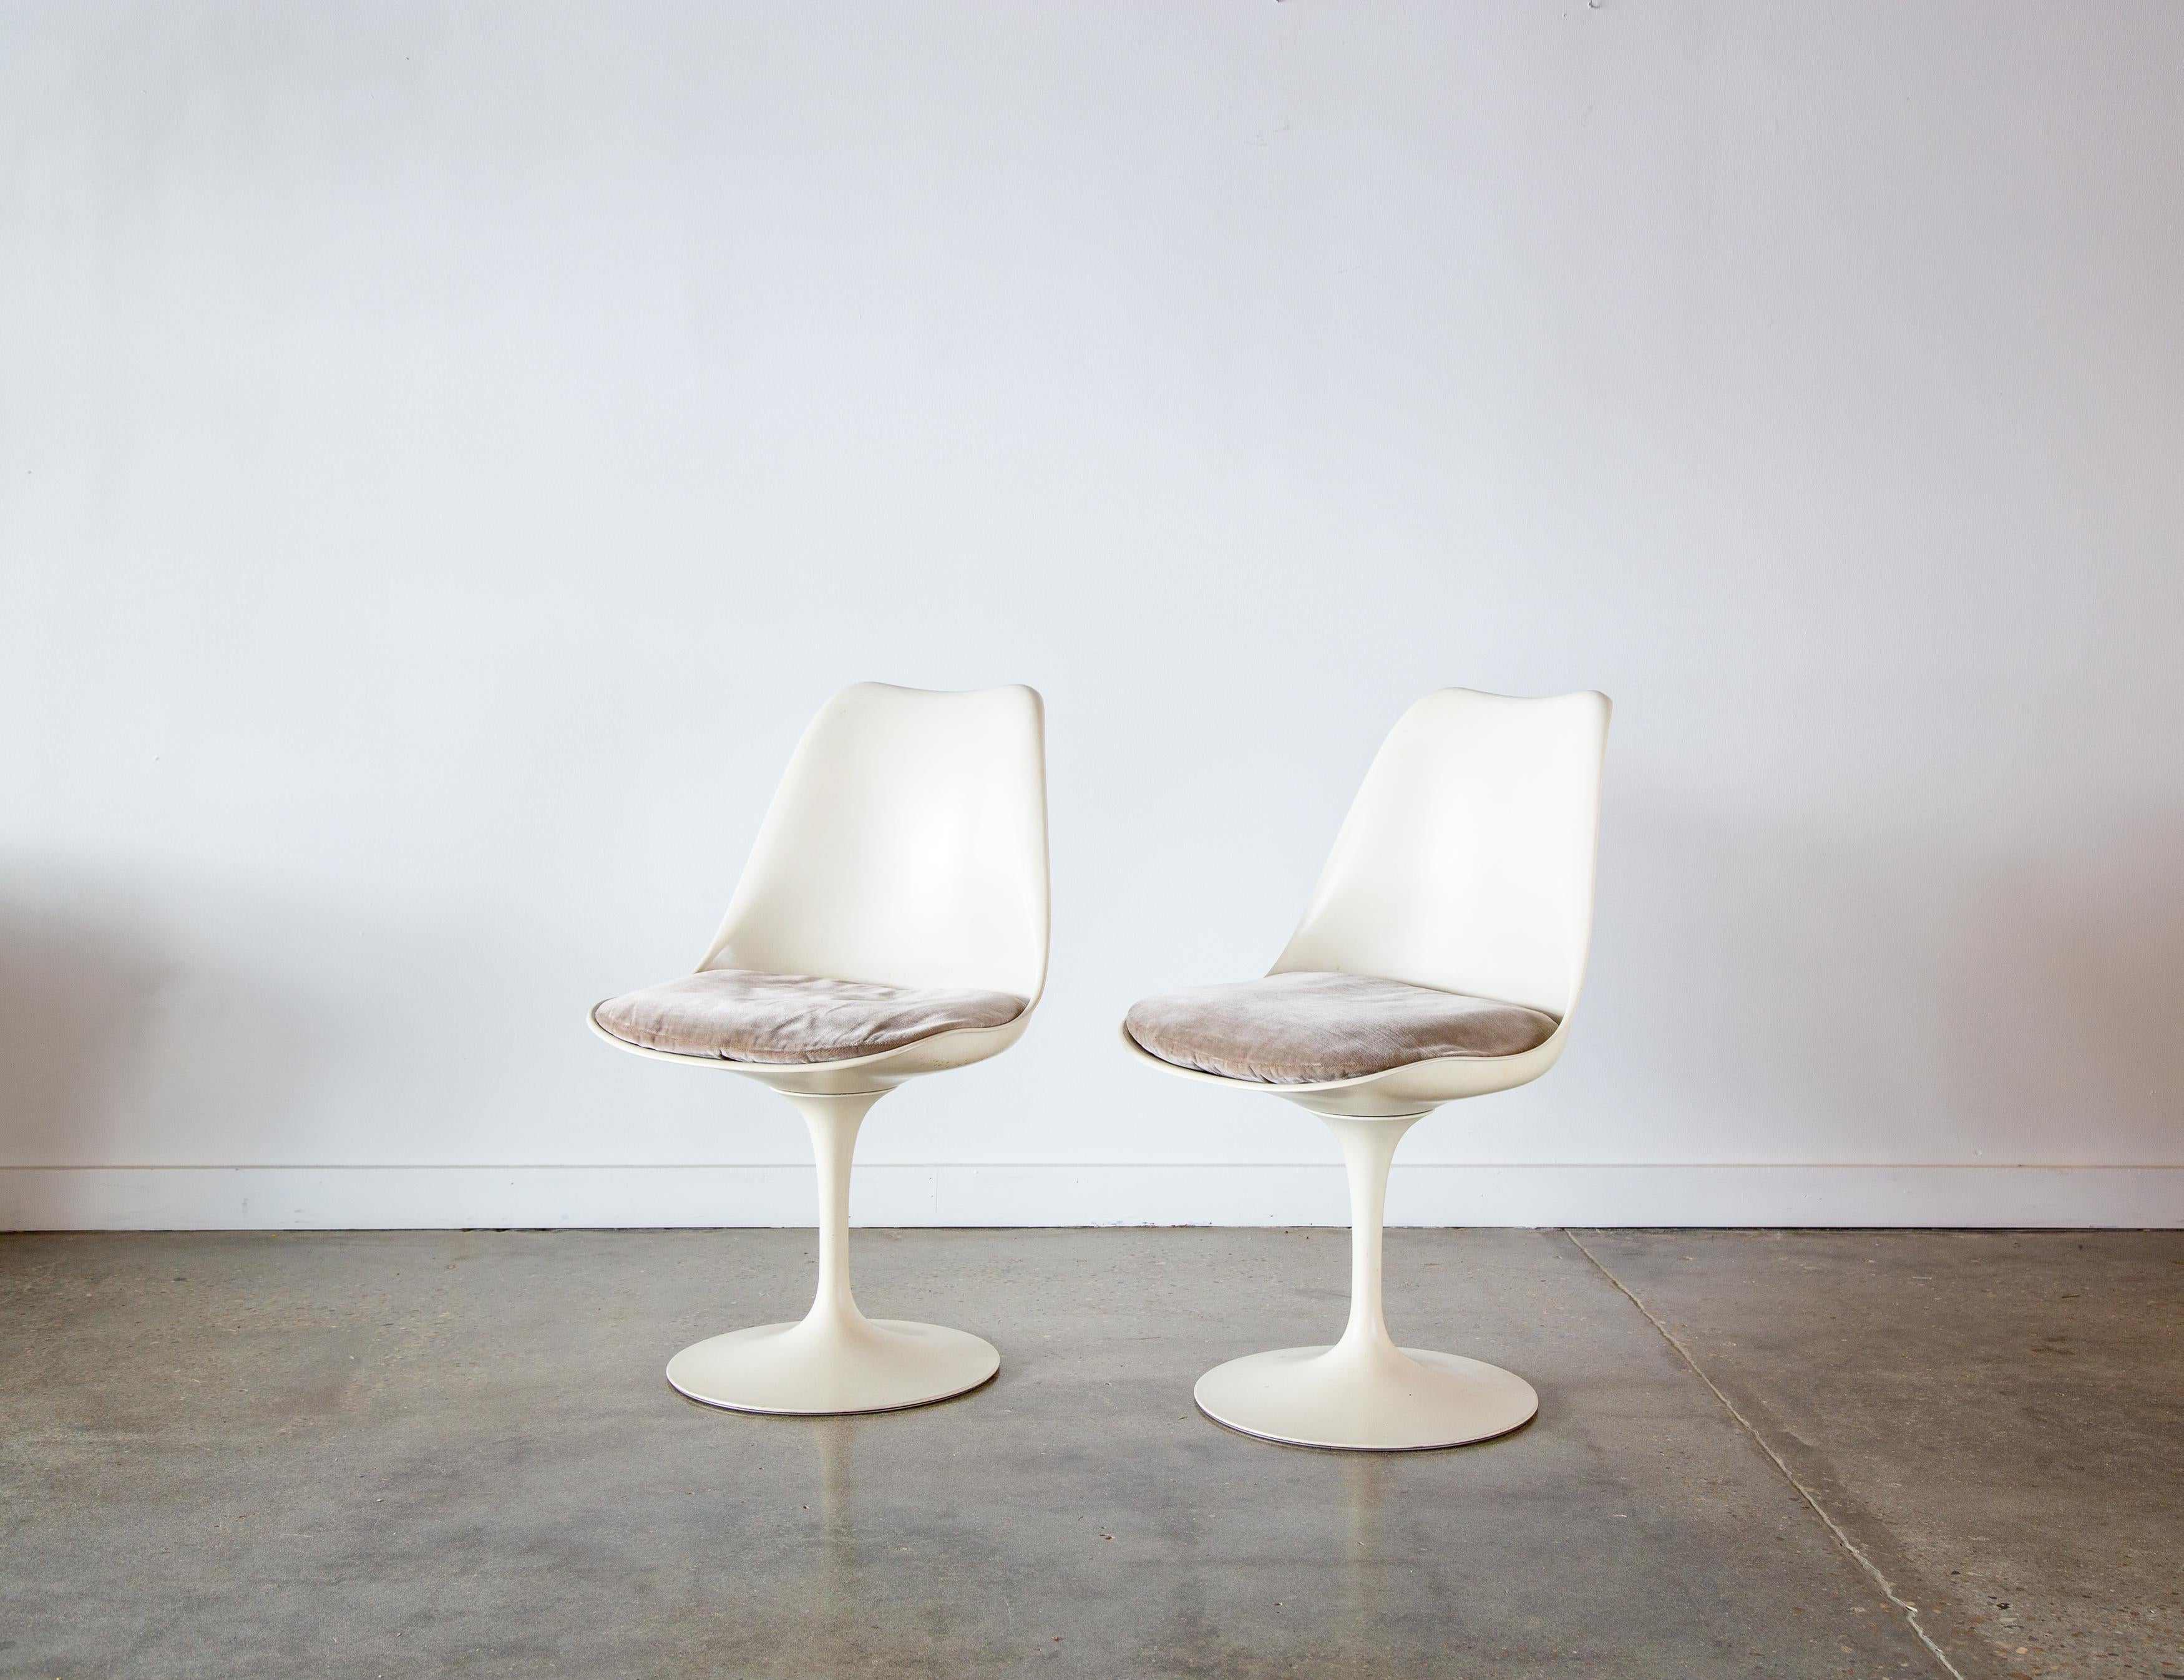 Paire iconique de chaises pivotantes tulipe conçues par Eero Saarinen pour Knoll Associates.  Ces chaises datent de la fin des années 1950 et du début des années 1960, comme le montre l'étiquette verticale en forme de nœud papillon.

Condit :